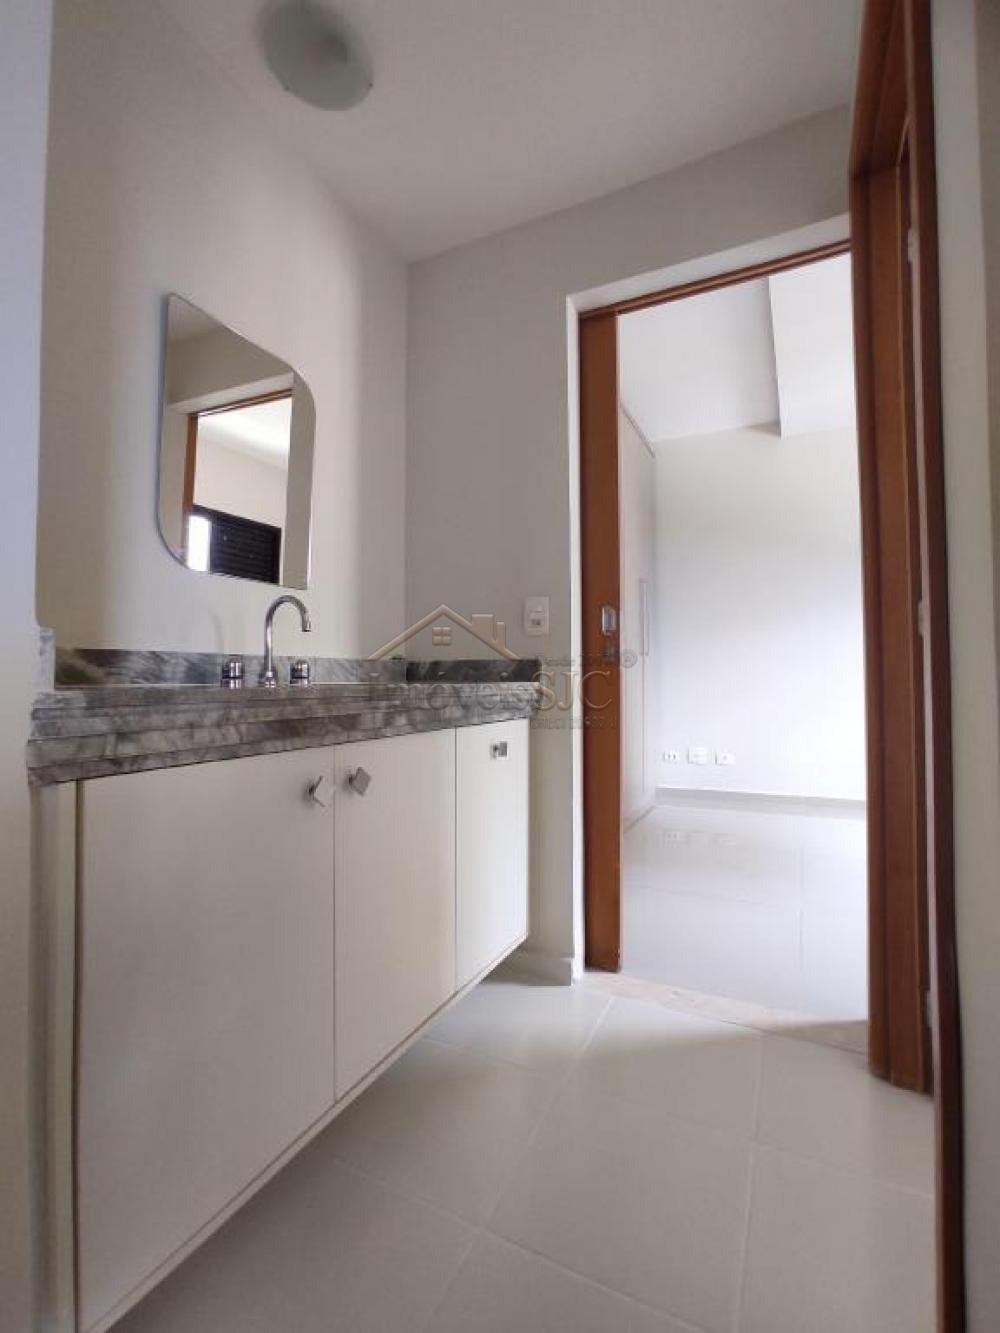 Alugar Apartamentos / Padrão em São José dos Campos R$ 7.000,00 - Foto 12